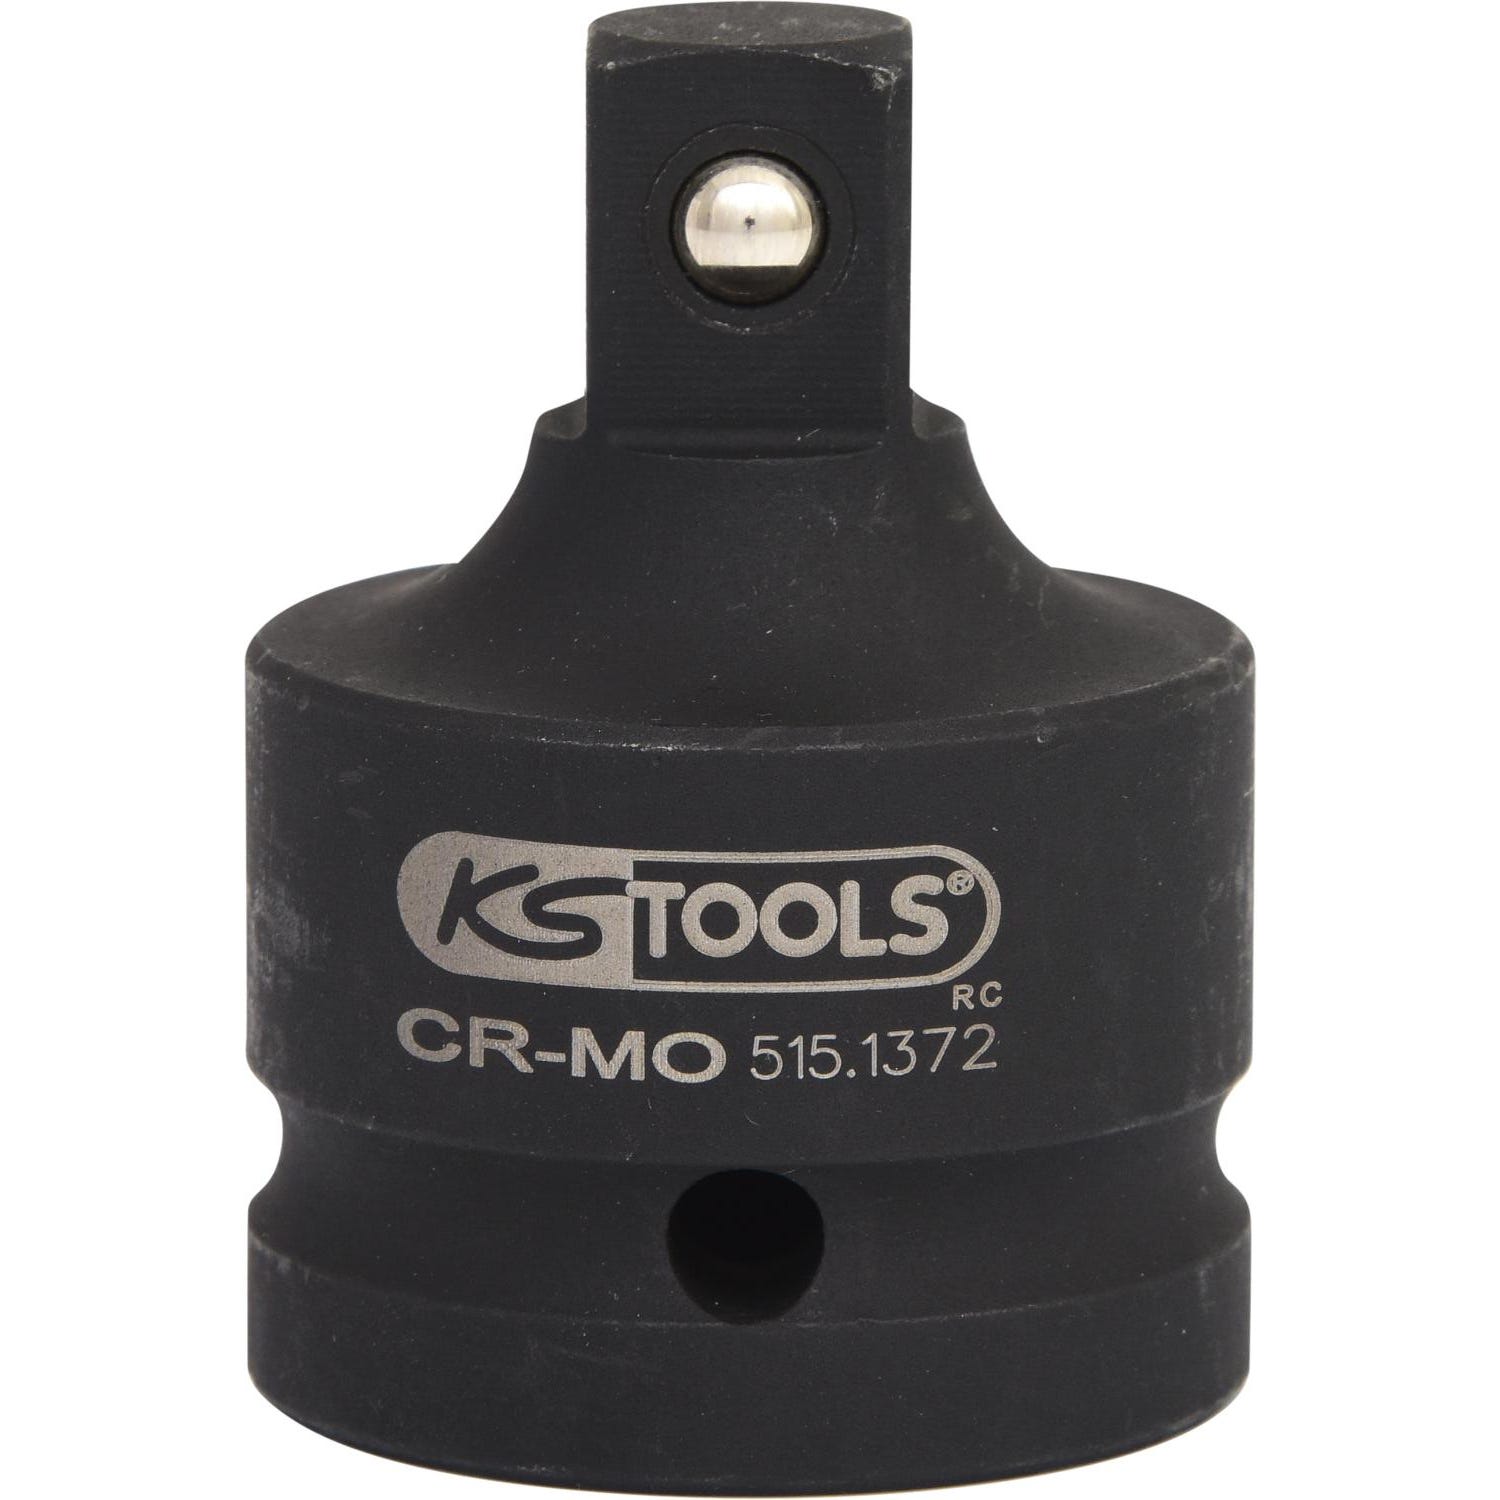 KS TOOLS - Réducteur à chocs 3/4" 1/2" - 515.1372 2